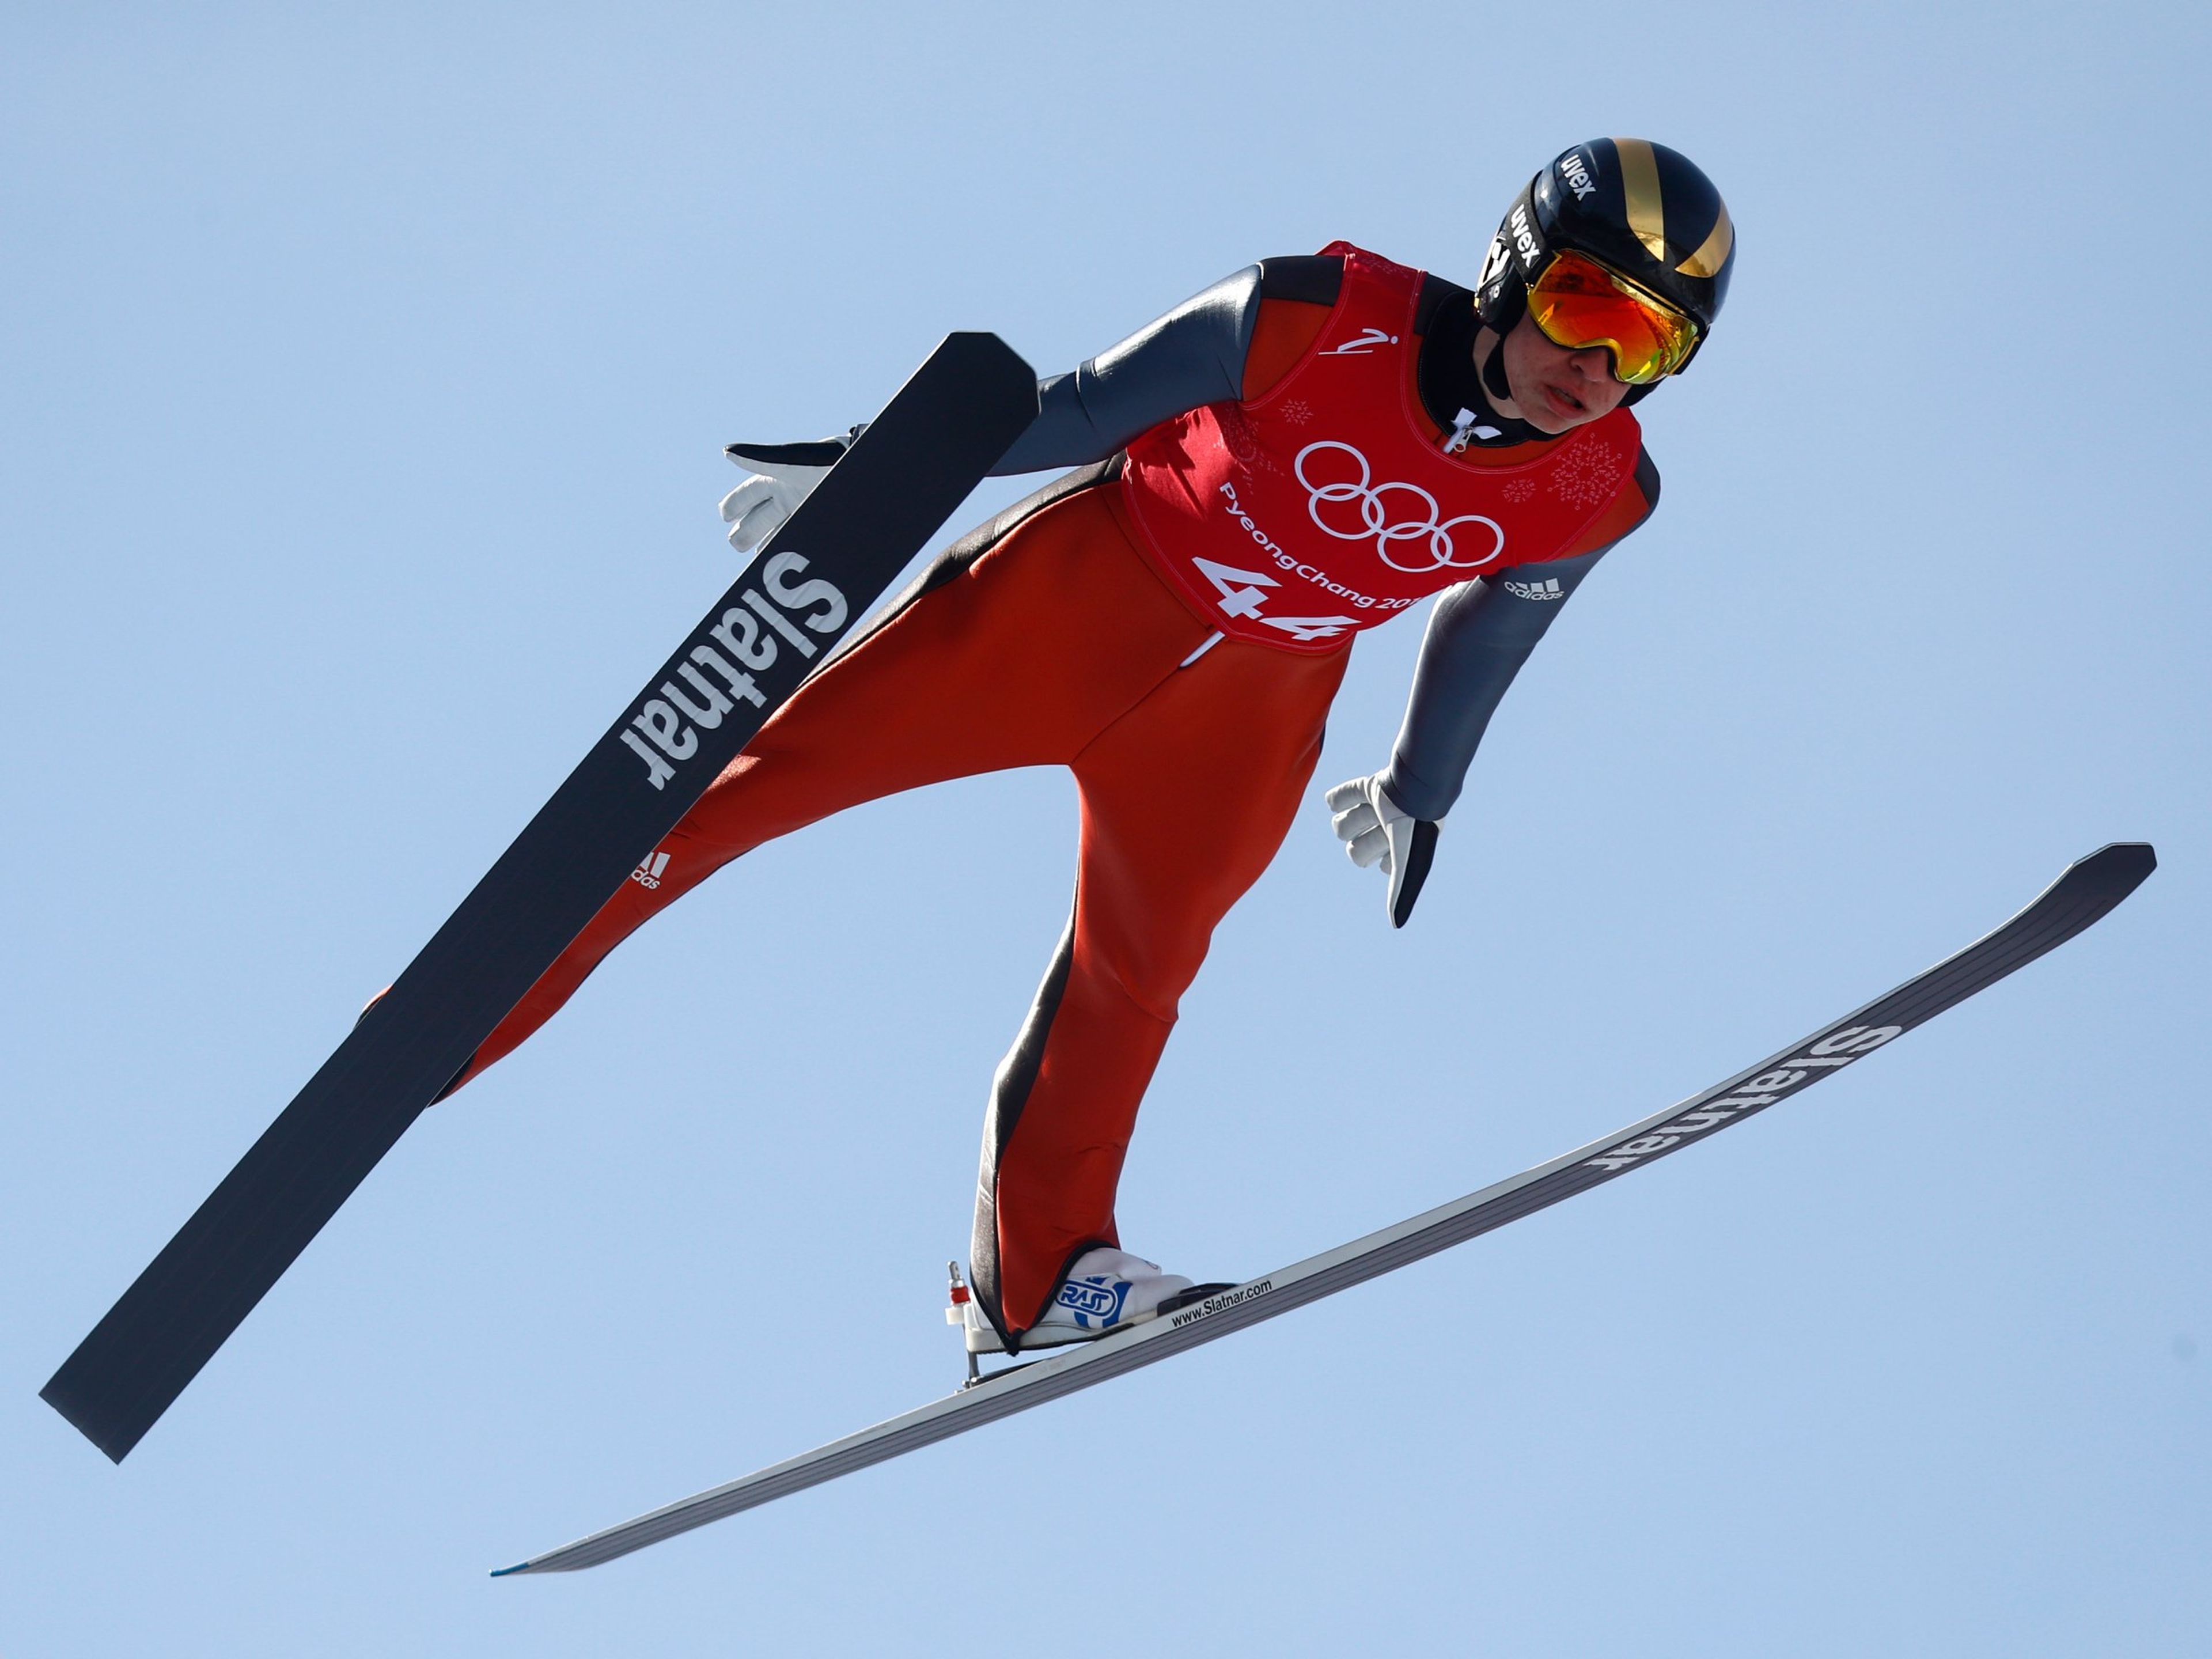 El saltador esloveno, Tilen Barton, entrenando para las Olimpiadas de Invierno 2018 en Pyeongchang.